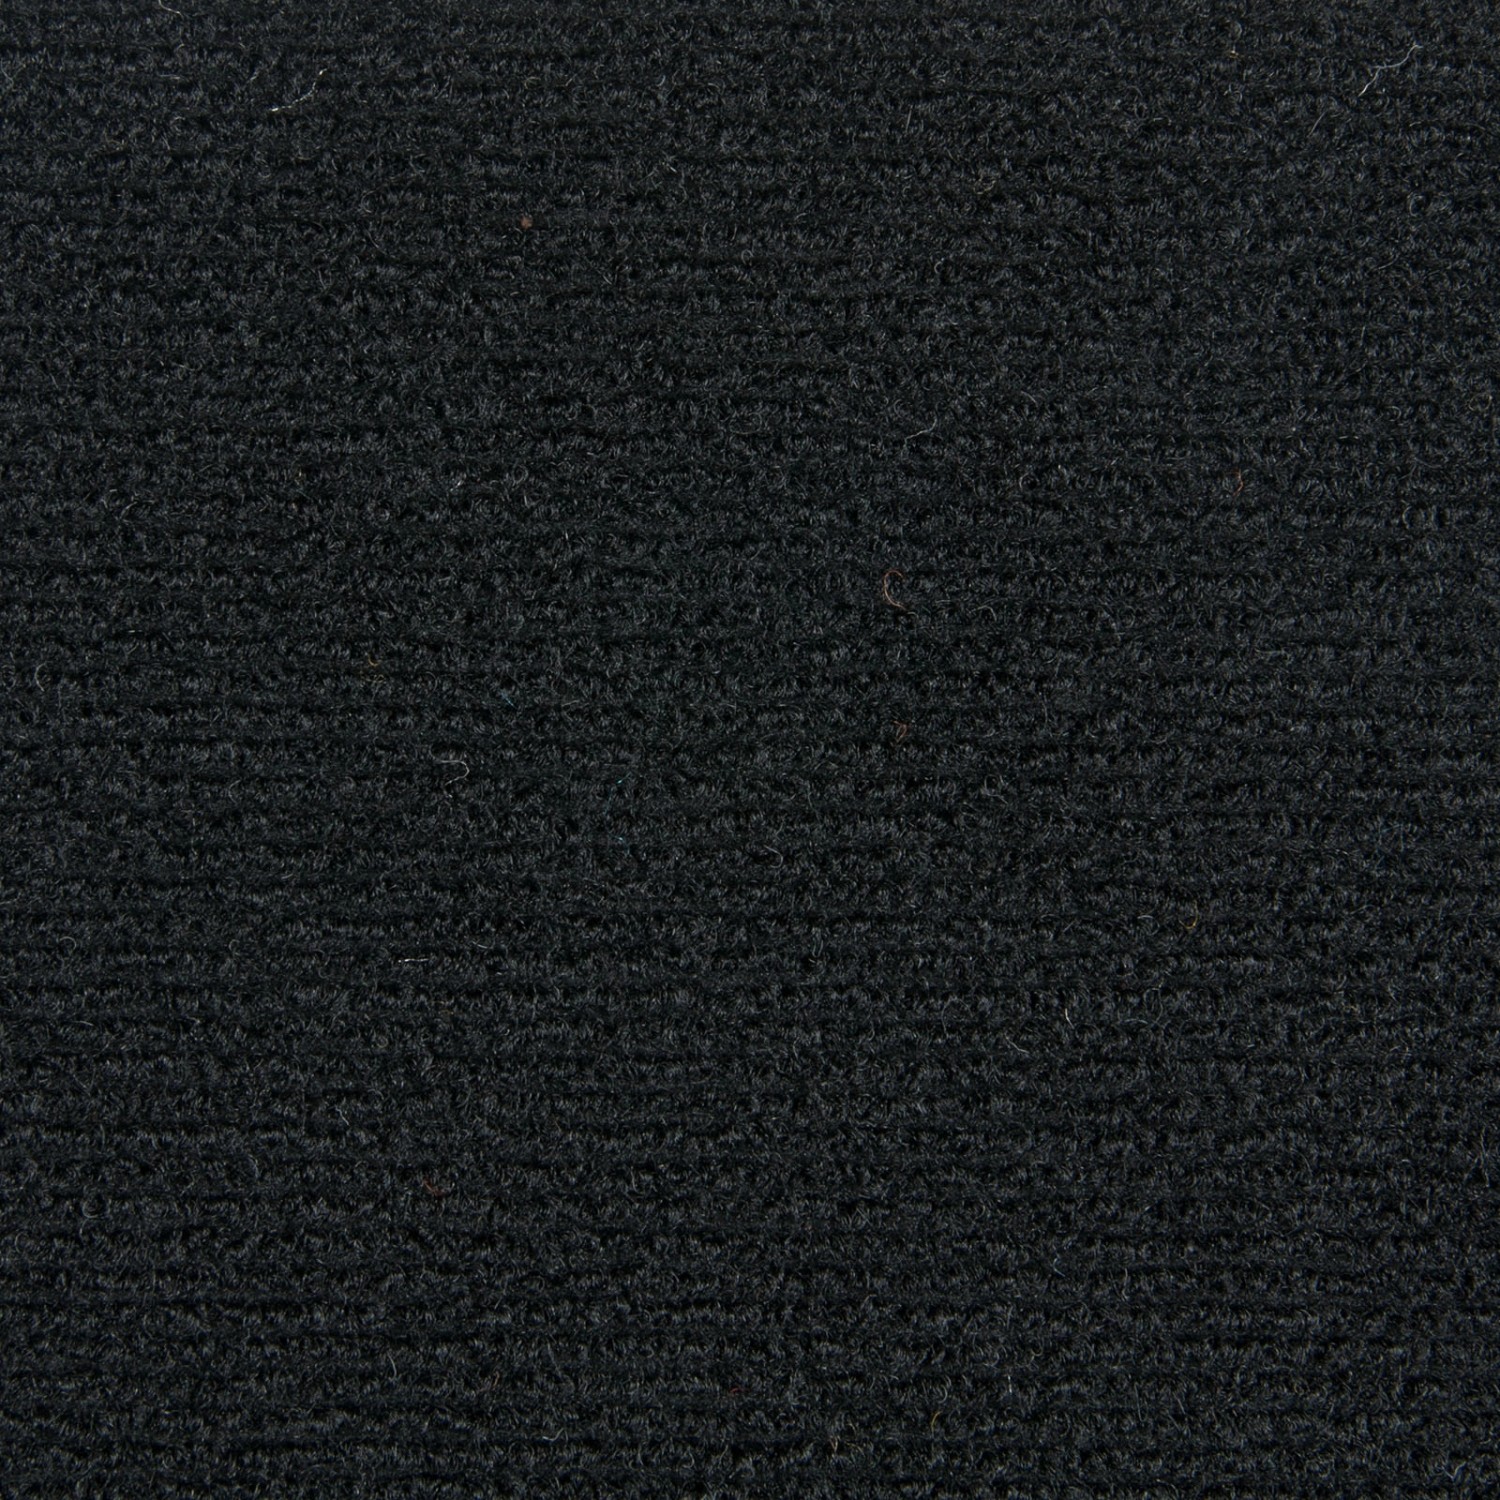 Schatex Schwarze Teppichfliesen Selbstliegend Nadelvlies Teppichboden Als Fliesen Ideal Für Büro Und Geschäft Nadelfilz 